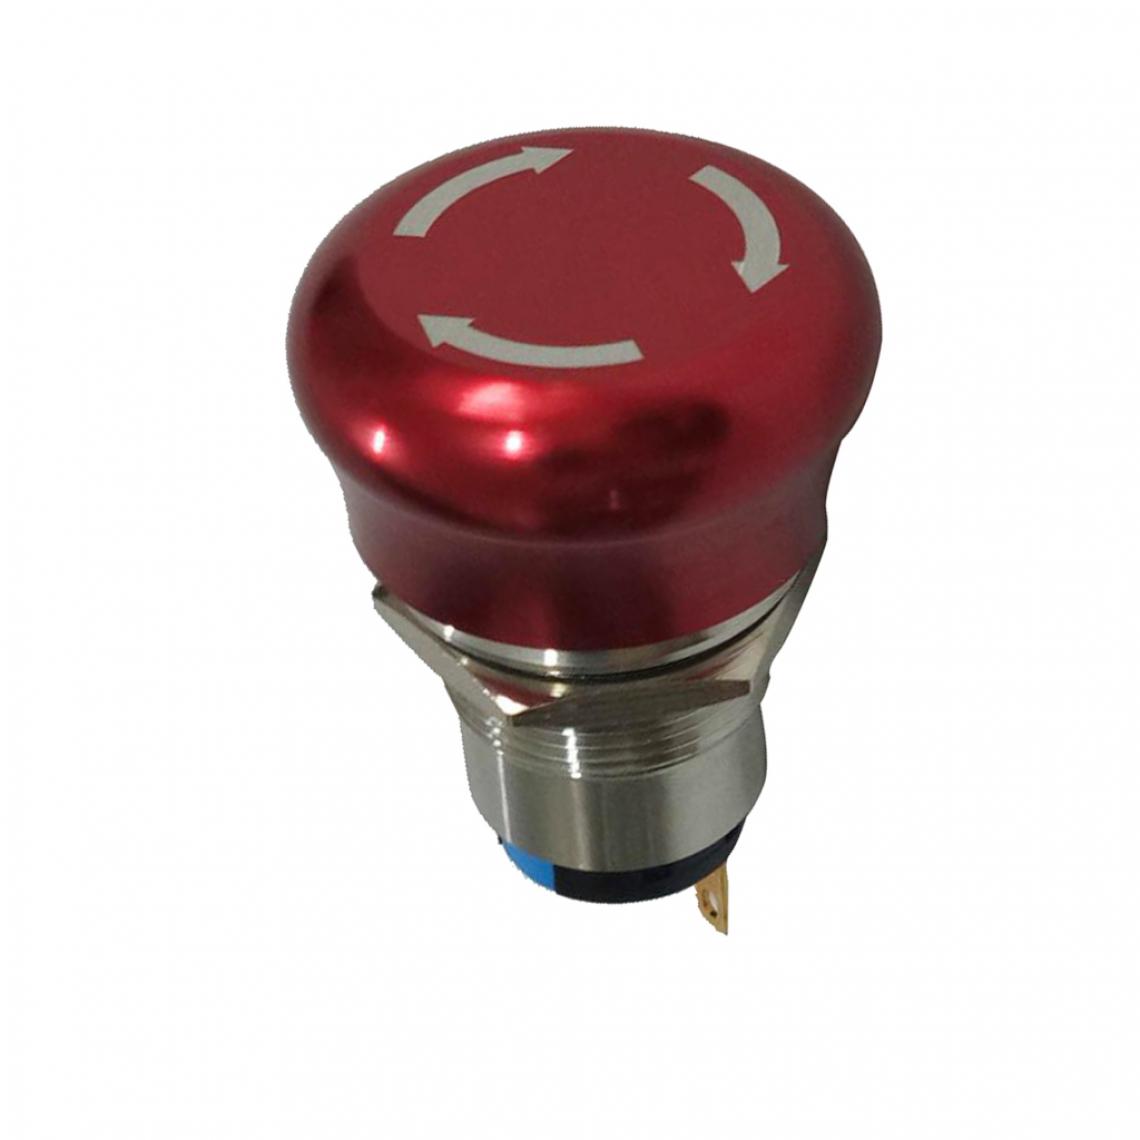 marque generique - ac 220v 5a 19mm rouge champignon capuchon d'arrêt d'urgence bouton-poussoir 1no 1nc - Switch